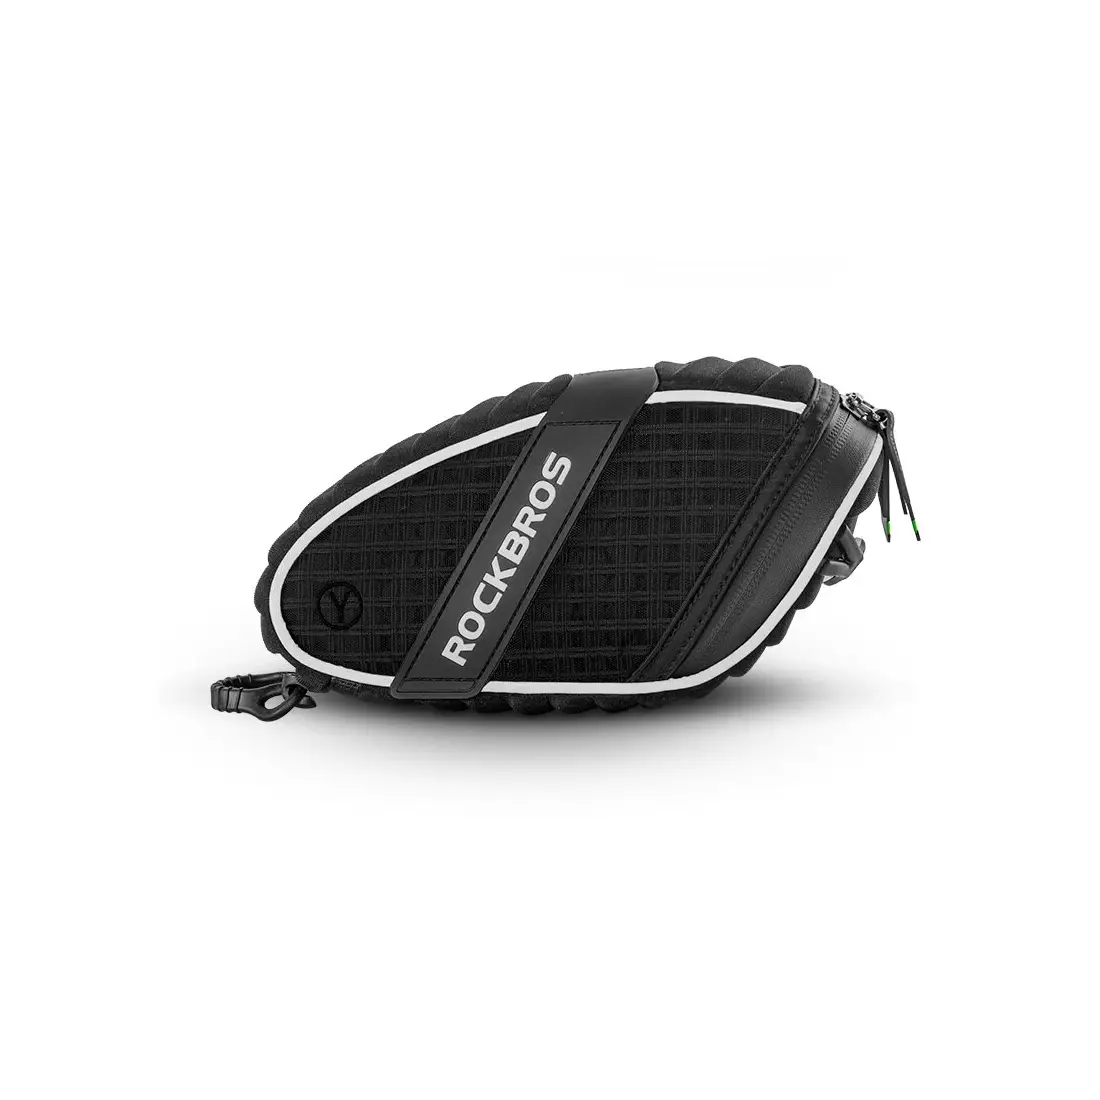 Rockbros Sedlová taška na kolo na suchý zip, černá C16-BK